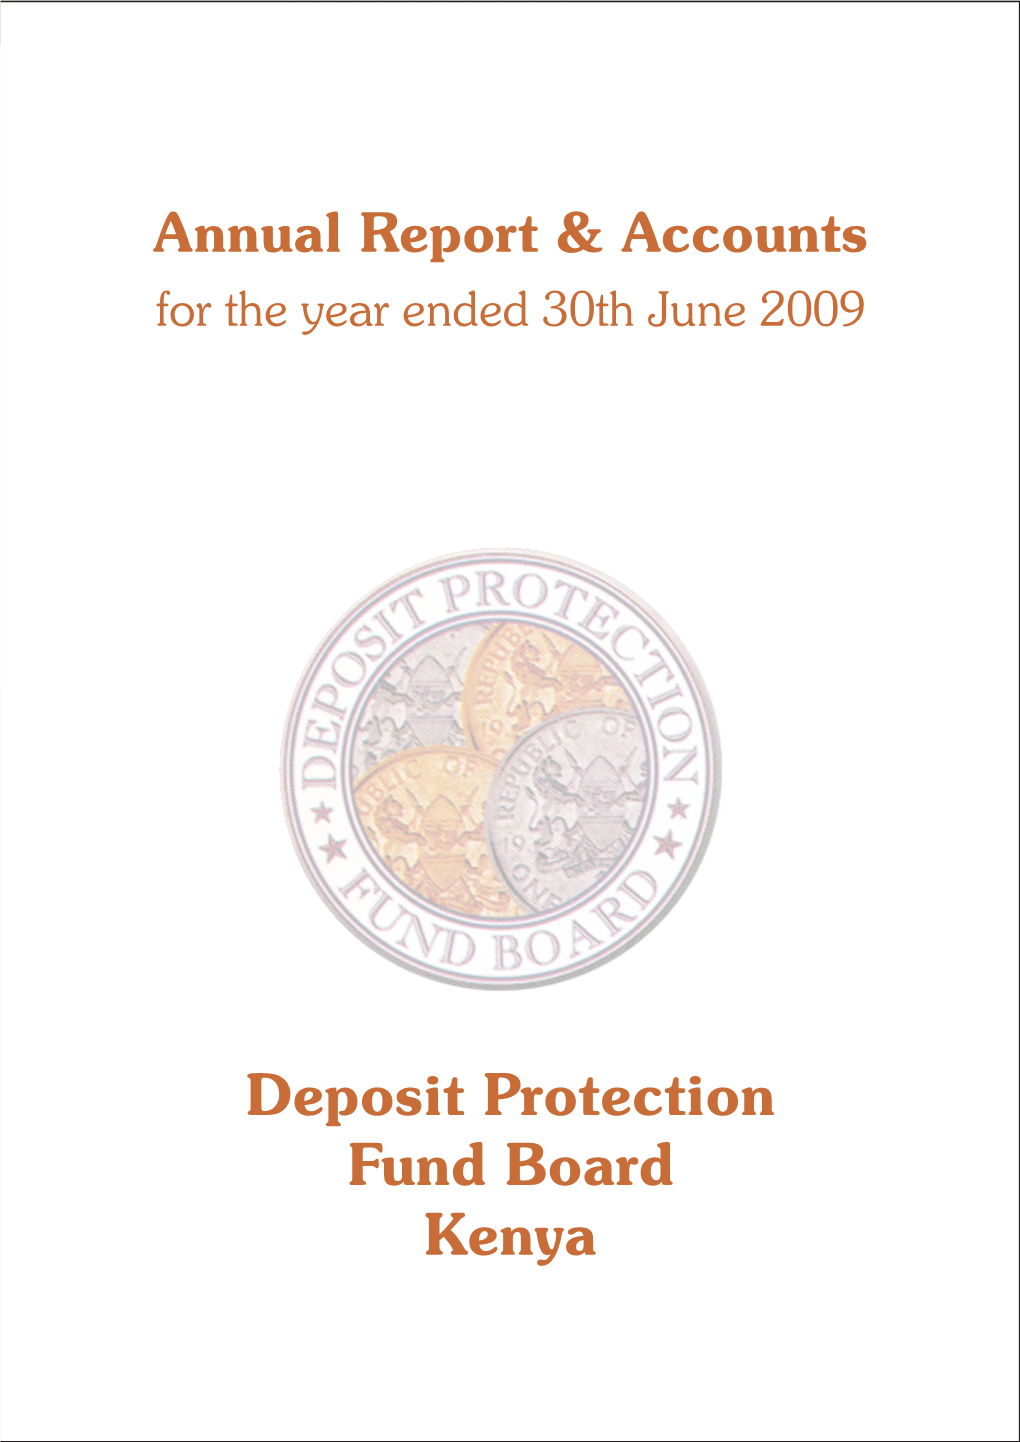 KDIC Annual Report 2009